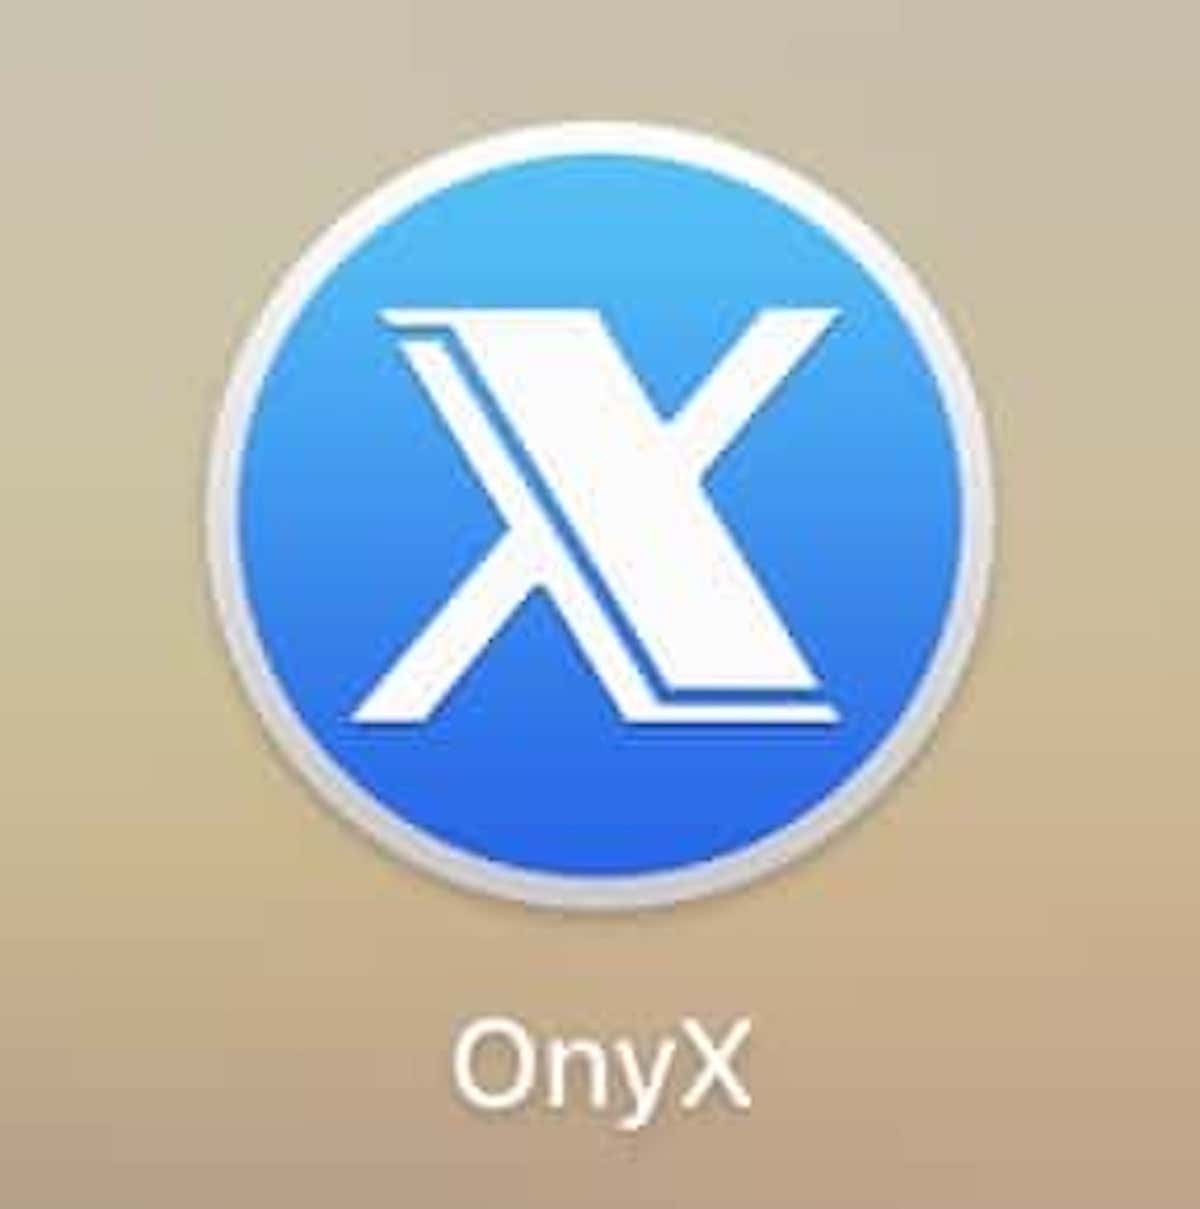 onyx for mac